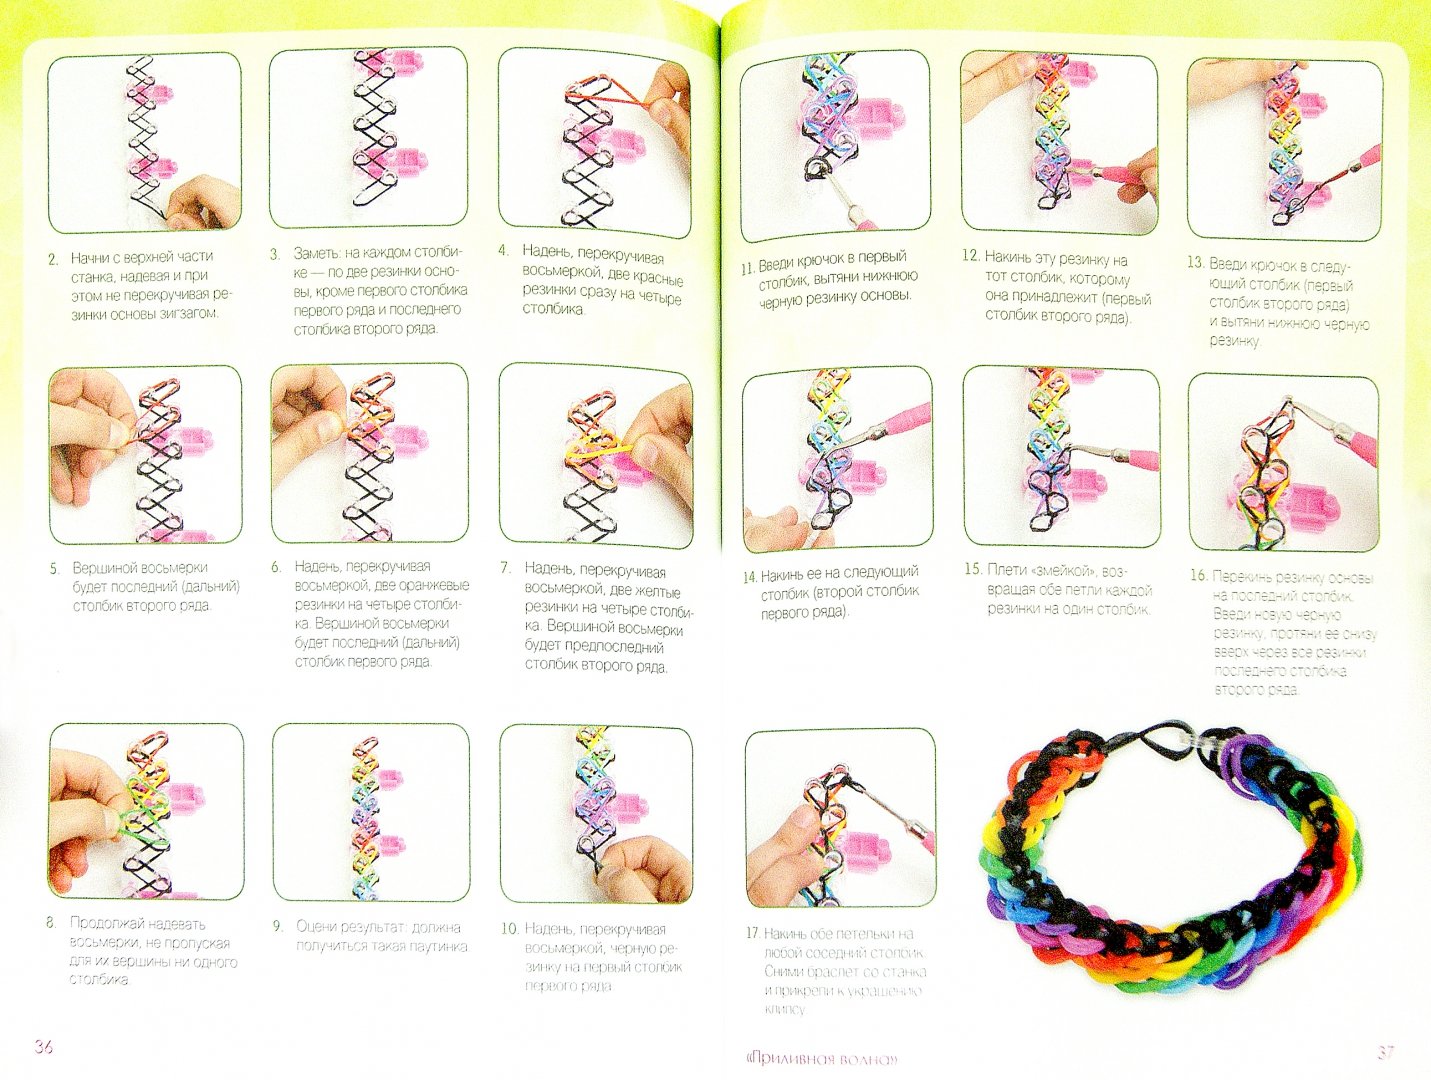 Как плести браслеты из резинок на пальцах - видео уроки по схемам плетения радужных фенечек